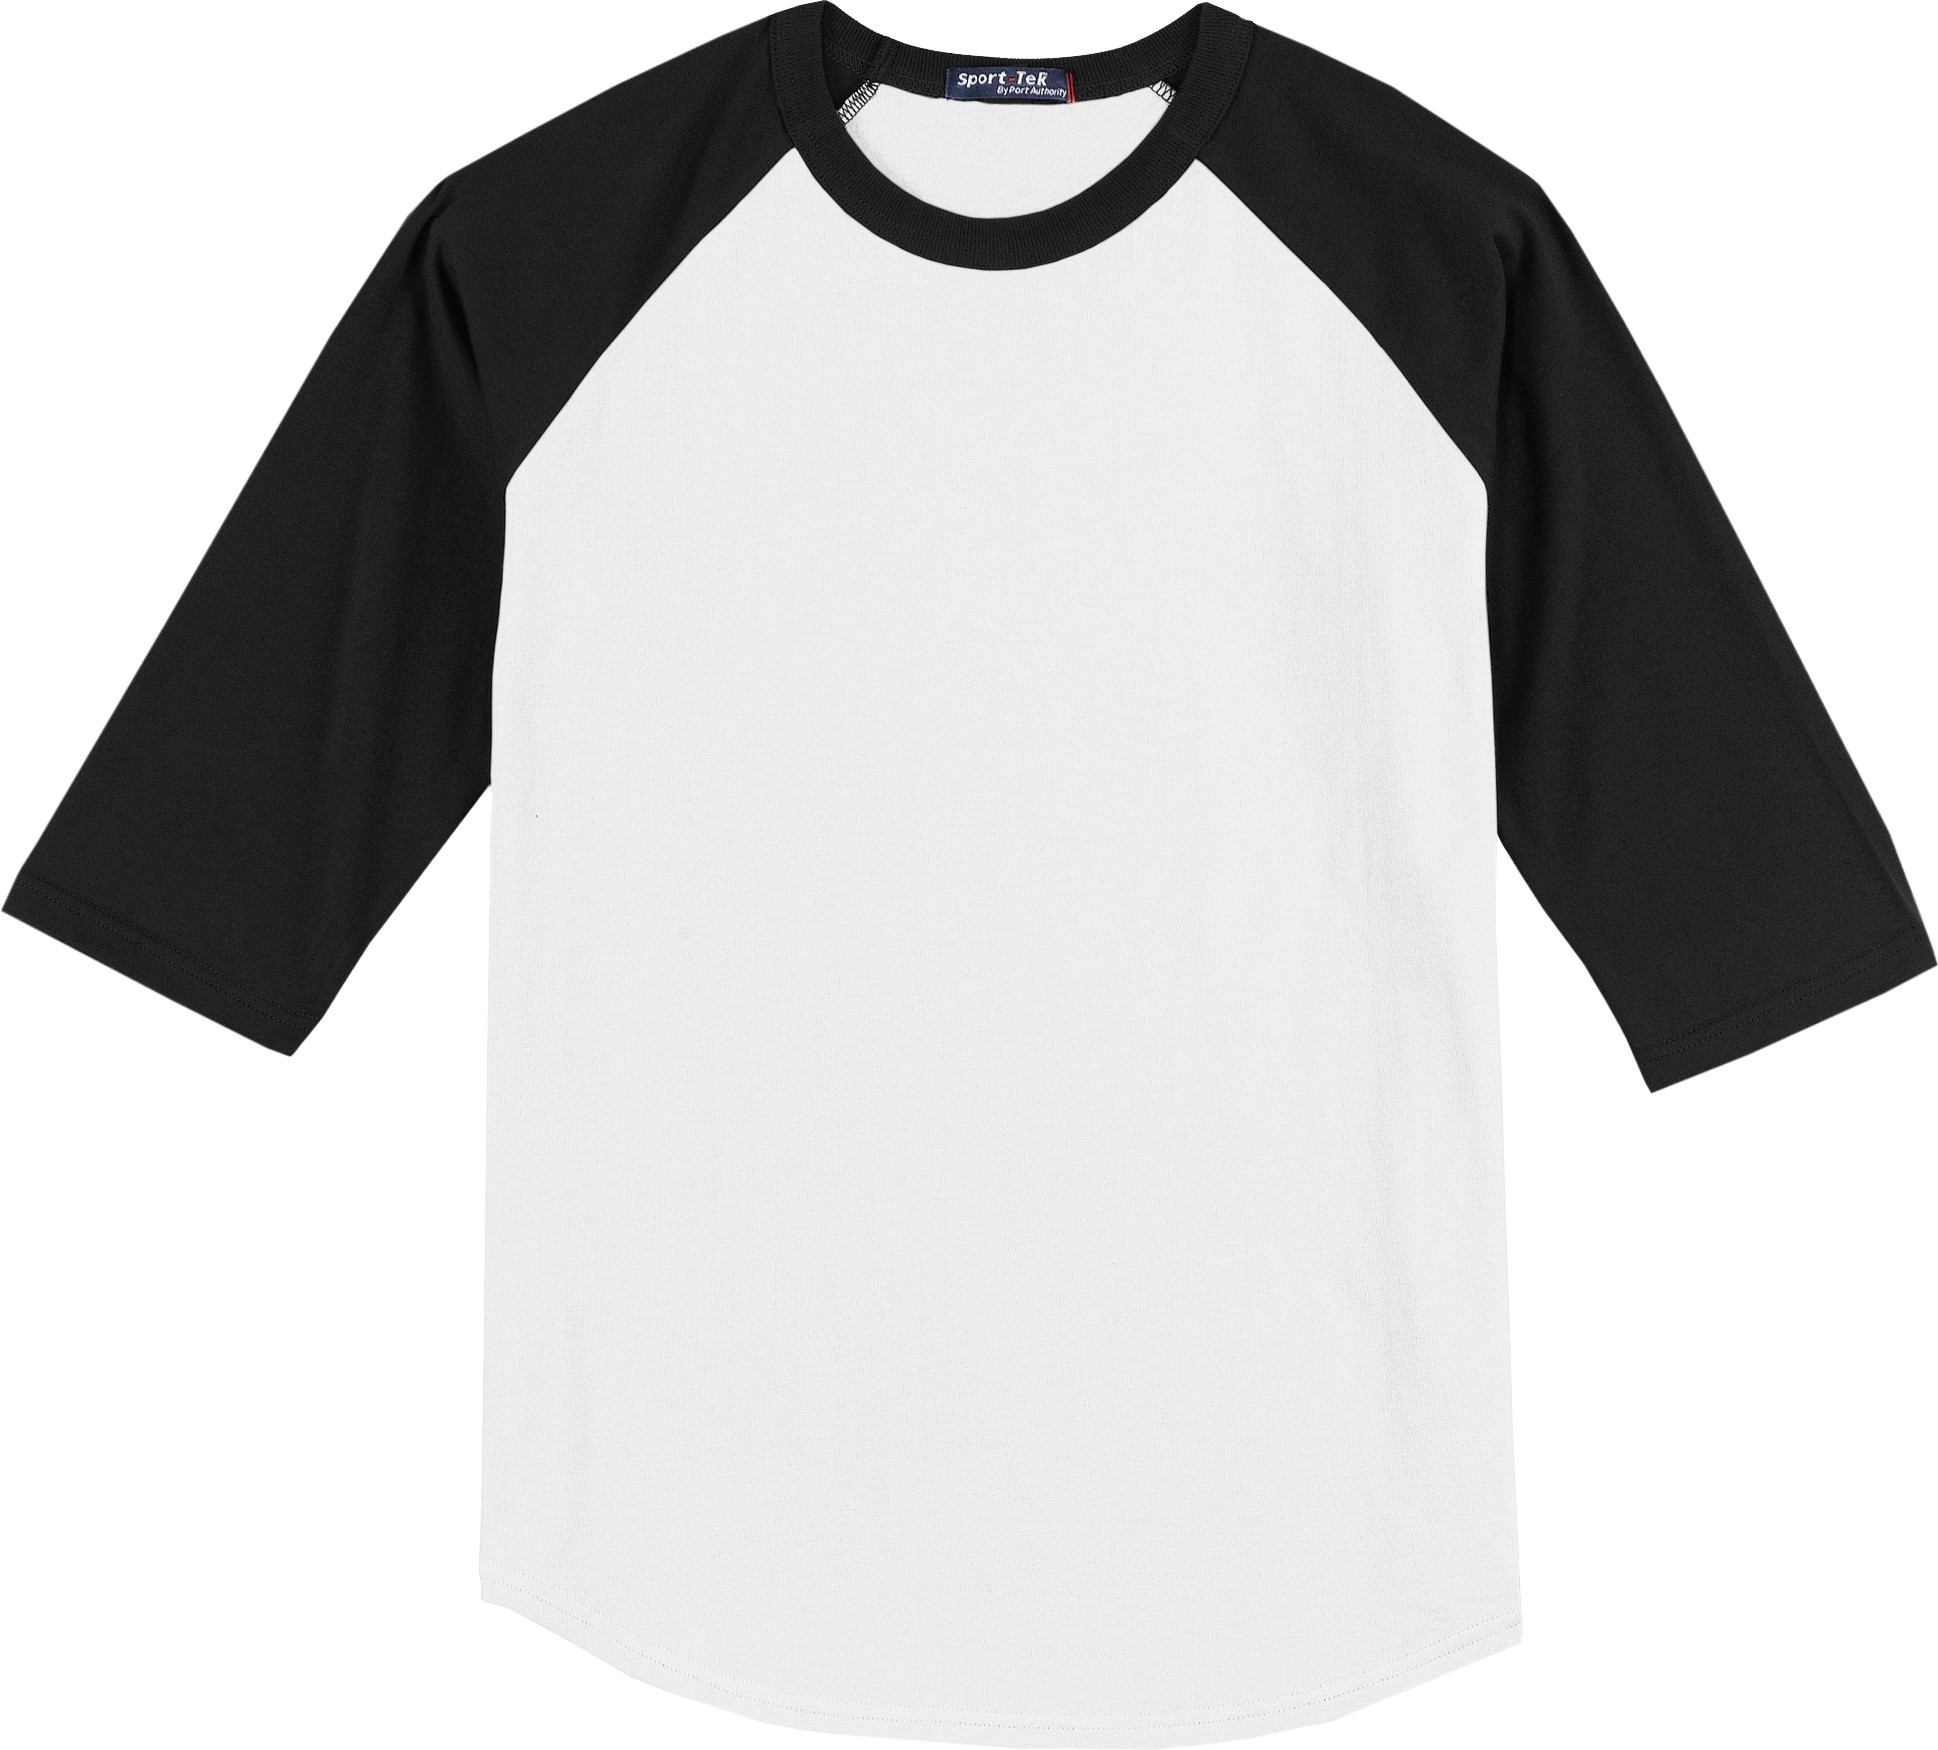 Blank baseball shirts | Shirts - ClipArt Best - ClipArt Best